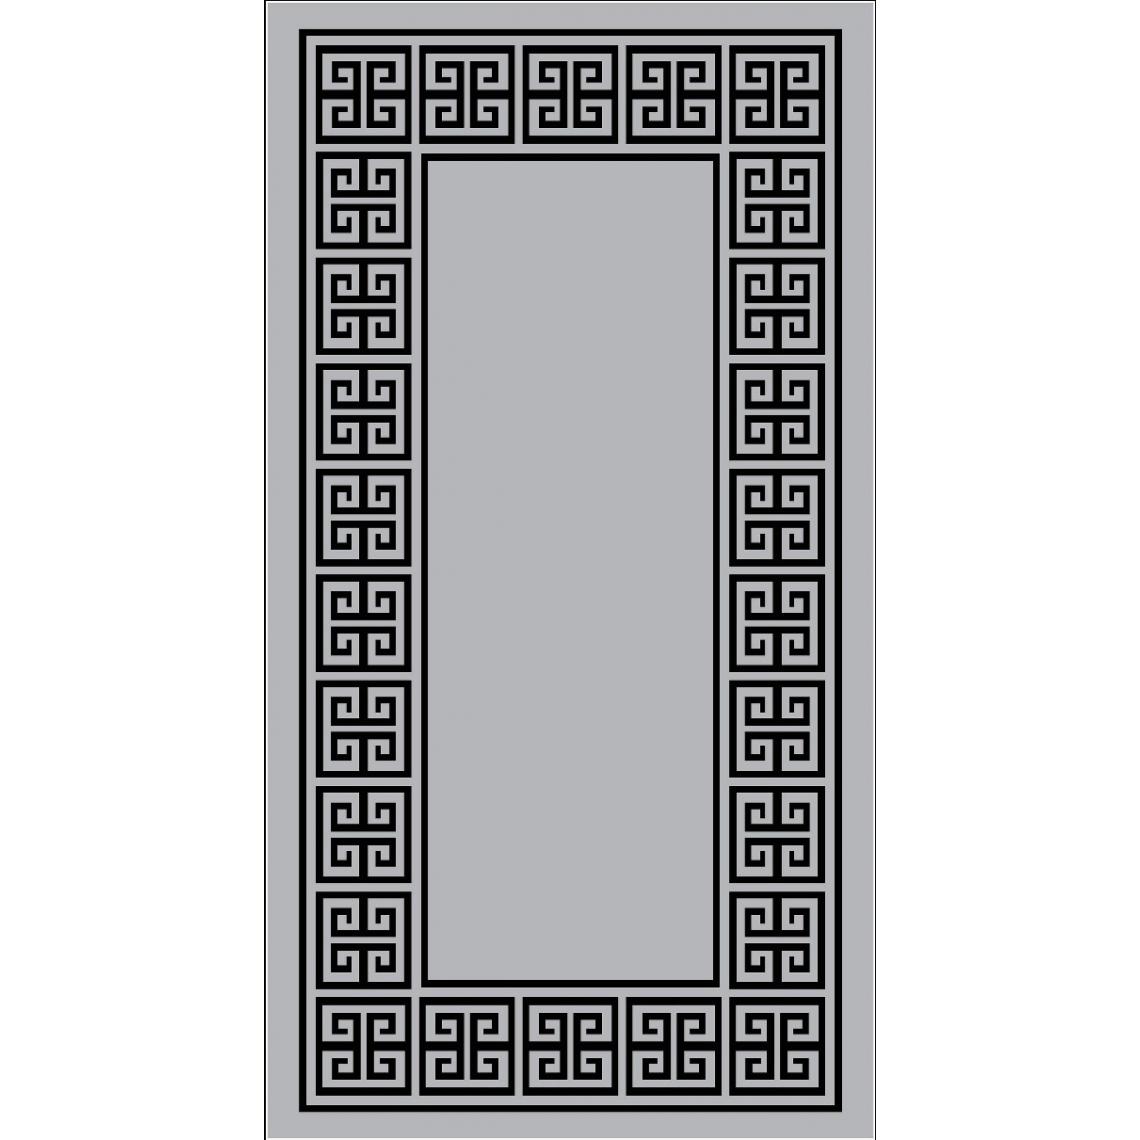 Homemania - HOMEMANIA Tapis Imprimé Greece 4 - Géométrique - Décoration de Maison - Antidérapant - Pour Salon, séjour, chambre à coucher - Gris, noir en Polyester, Coton, 80 x 150 cm - Tapis